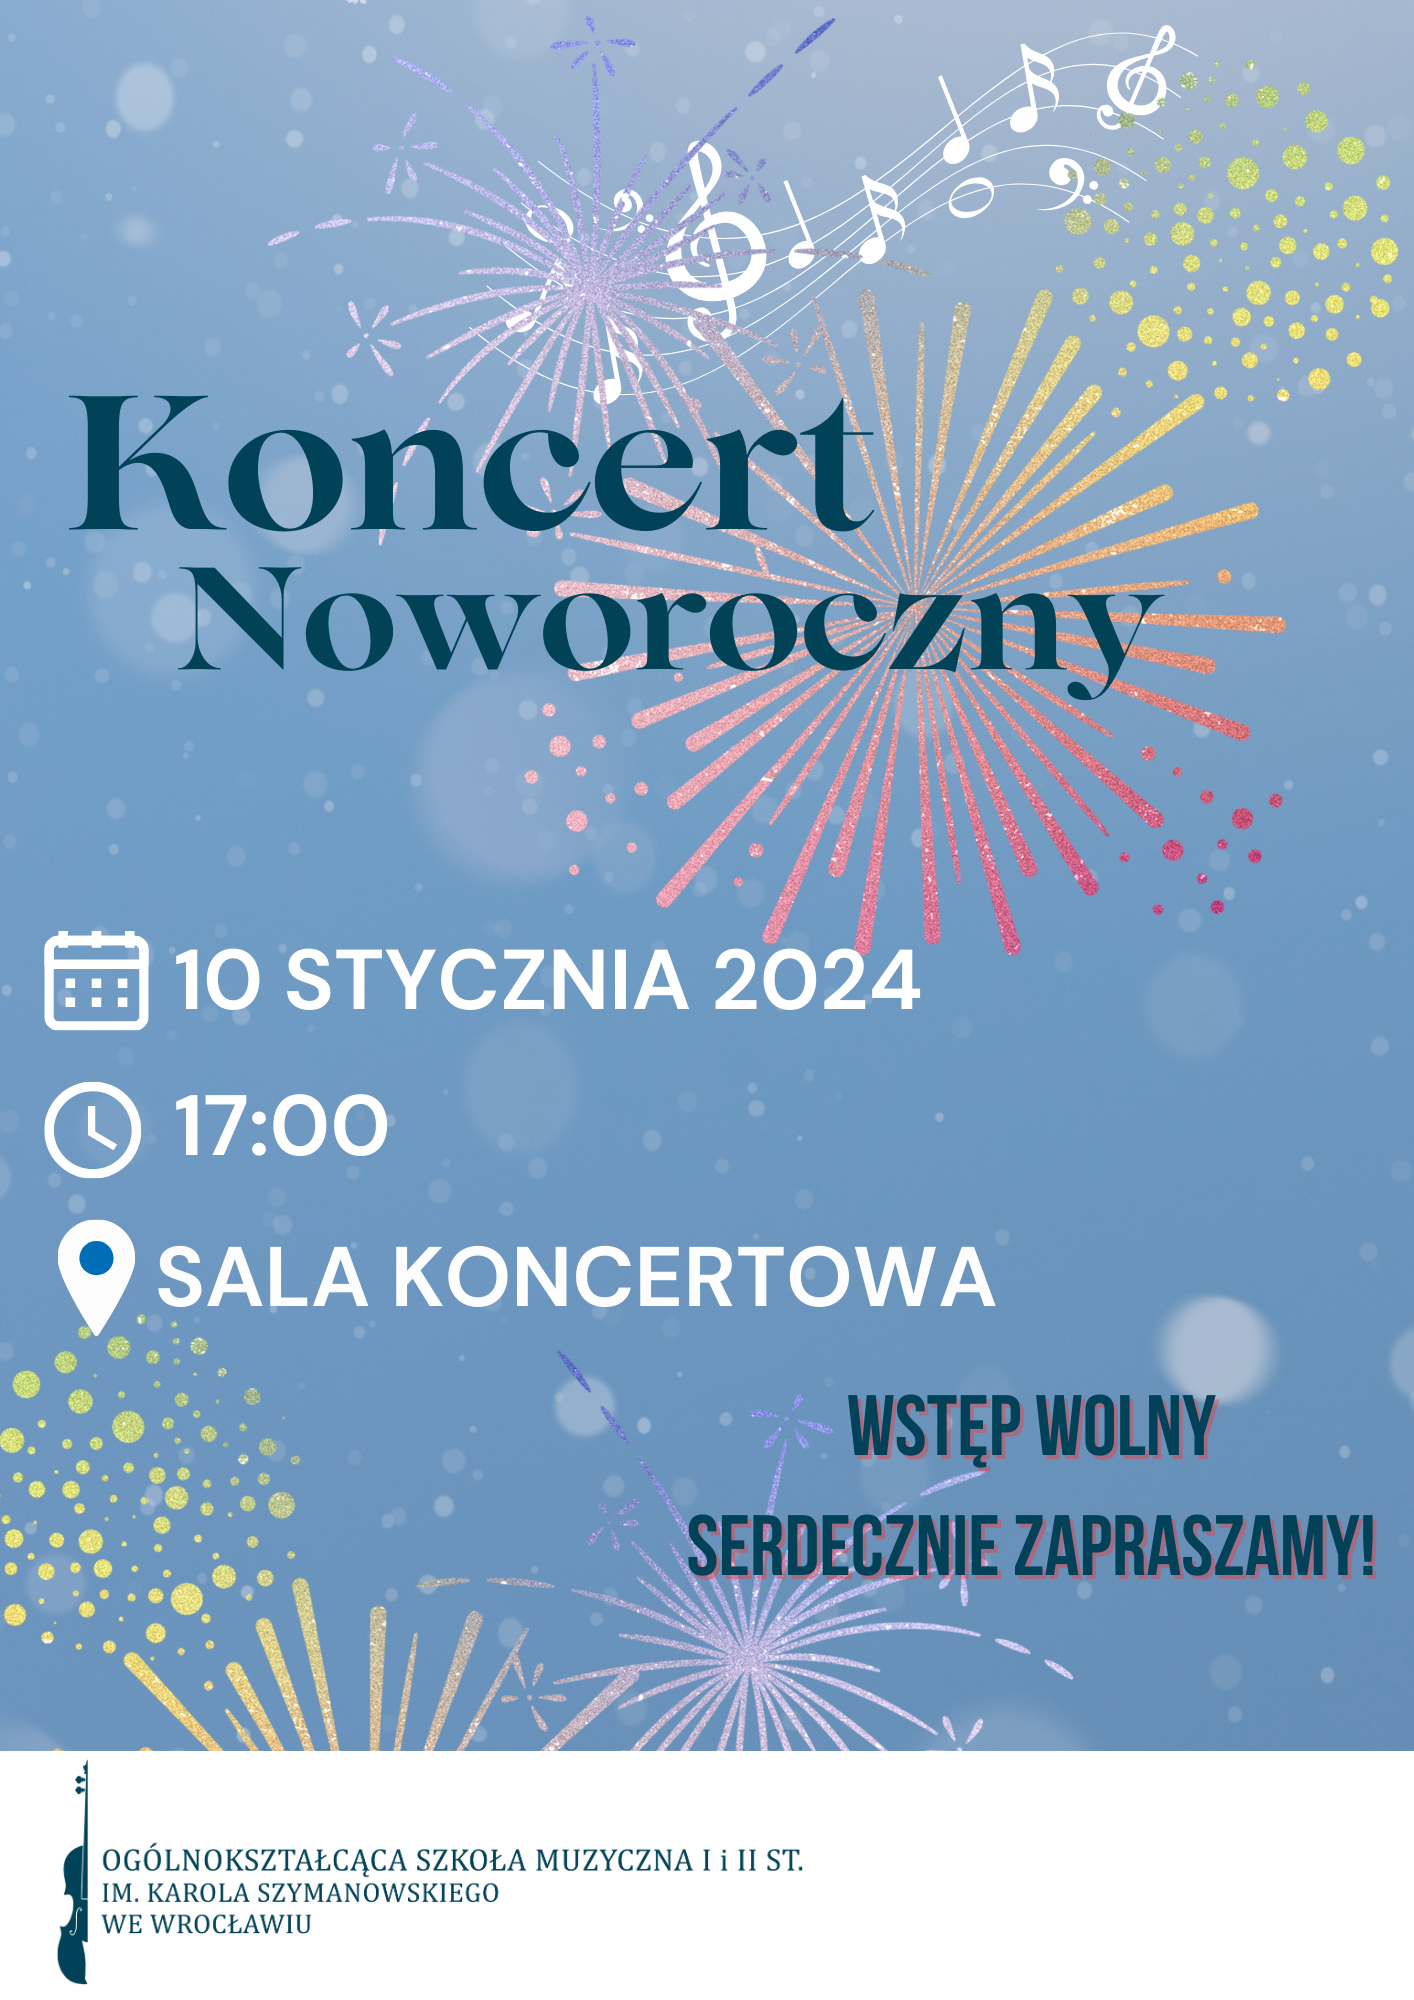 plakat w niebieskiej tonacji z elementami graficznymi sztucznych ogni i napisem: "Koncert Noworoczny, 10.01, godz. 17:00, sala koncertowa"